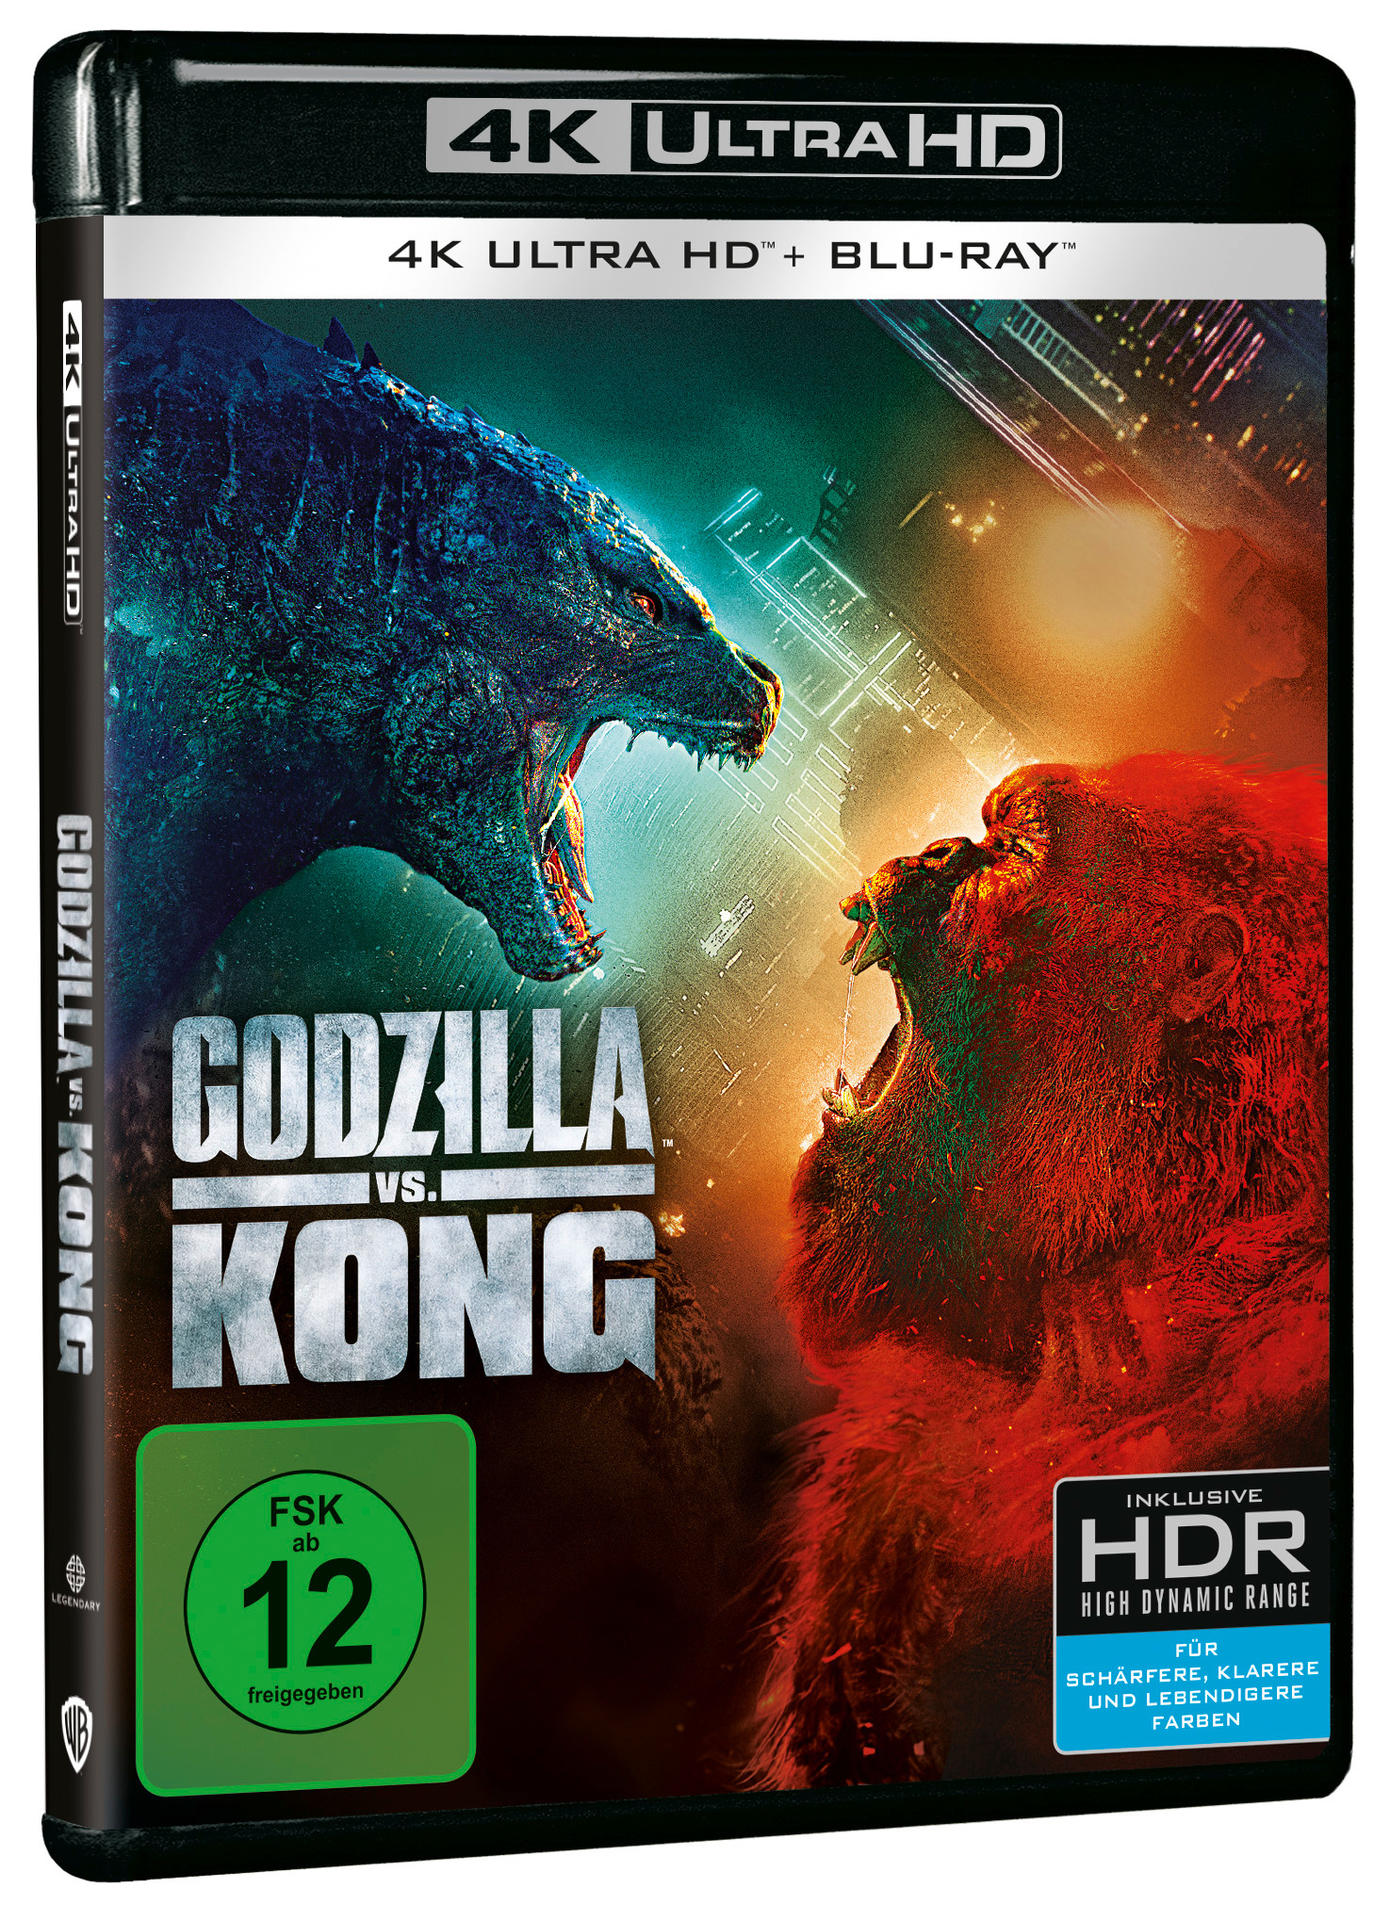 Kong + HD Blu-ray 4K Godzilla Ultra Blu-ray vs.